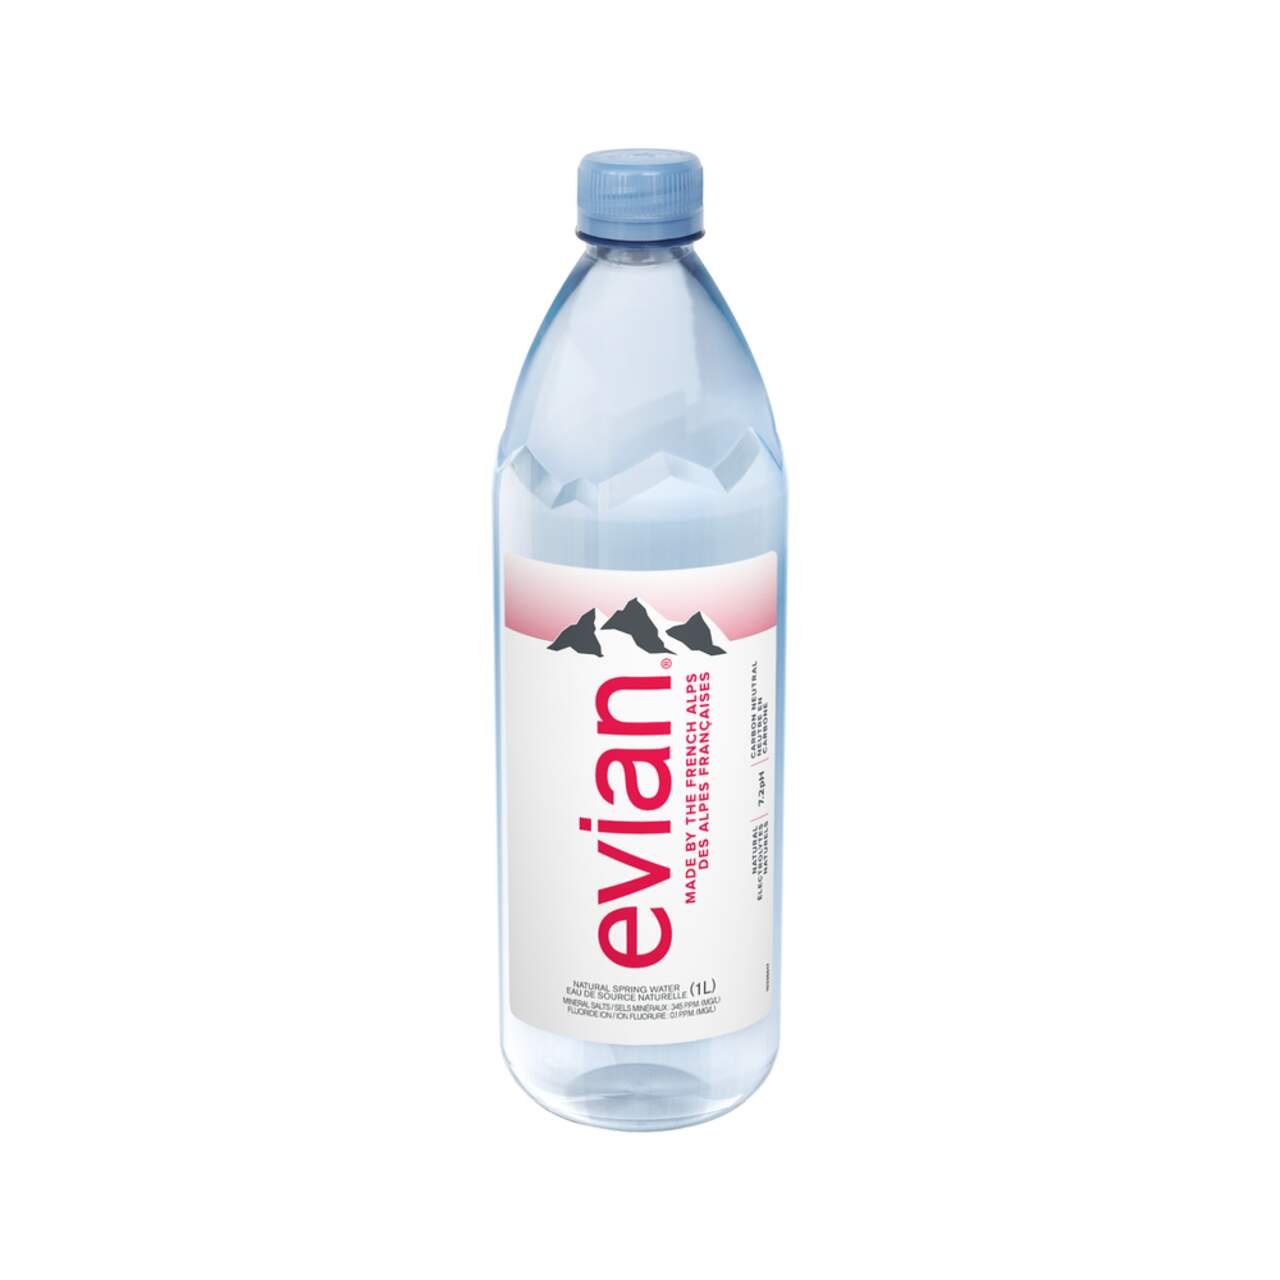 Bouteille d'eau 500 ml - Eau Minérale Naturelle - Evian